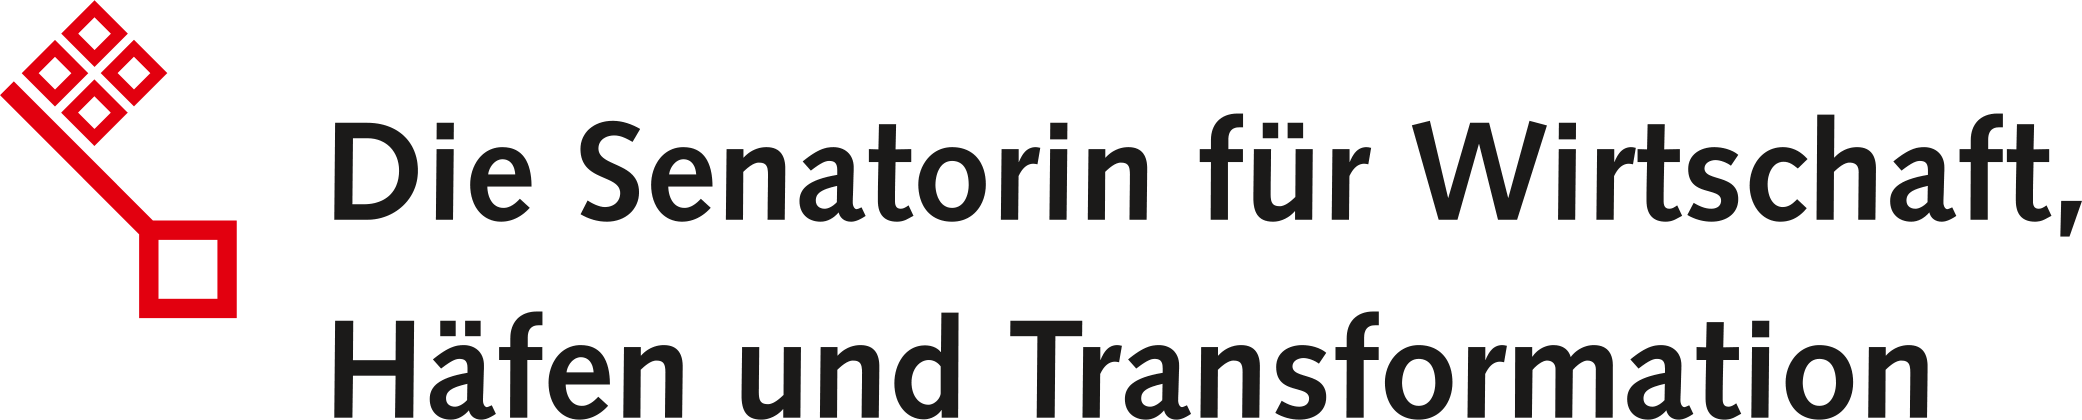 Logo Die Senatorin für Wirtschaft, Häfen und Transformation